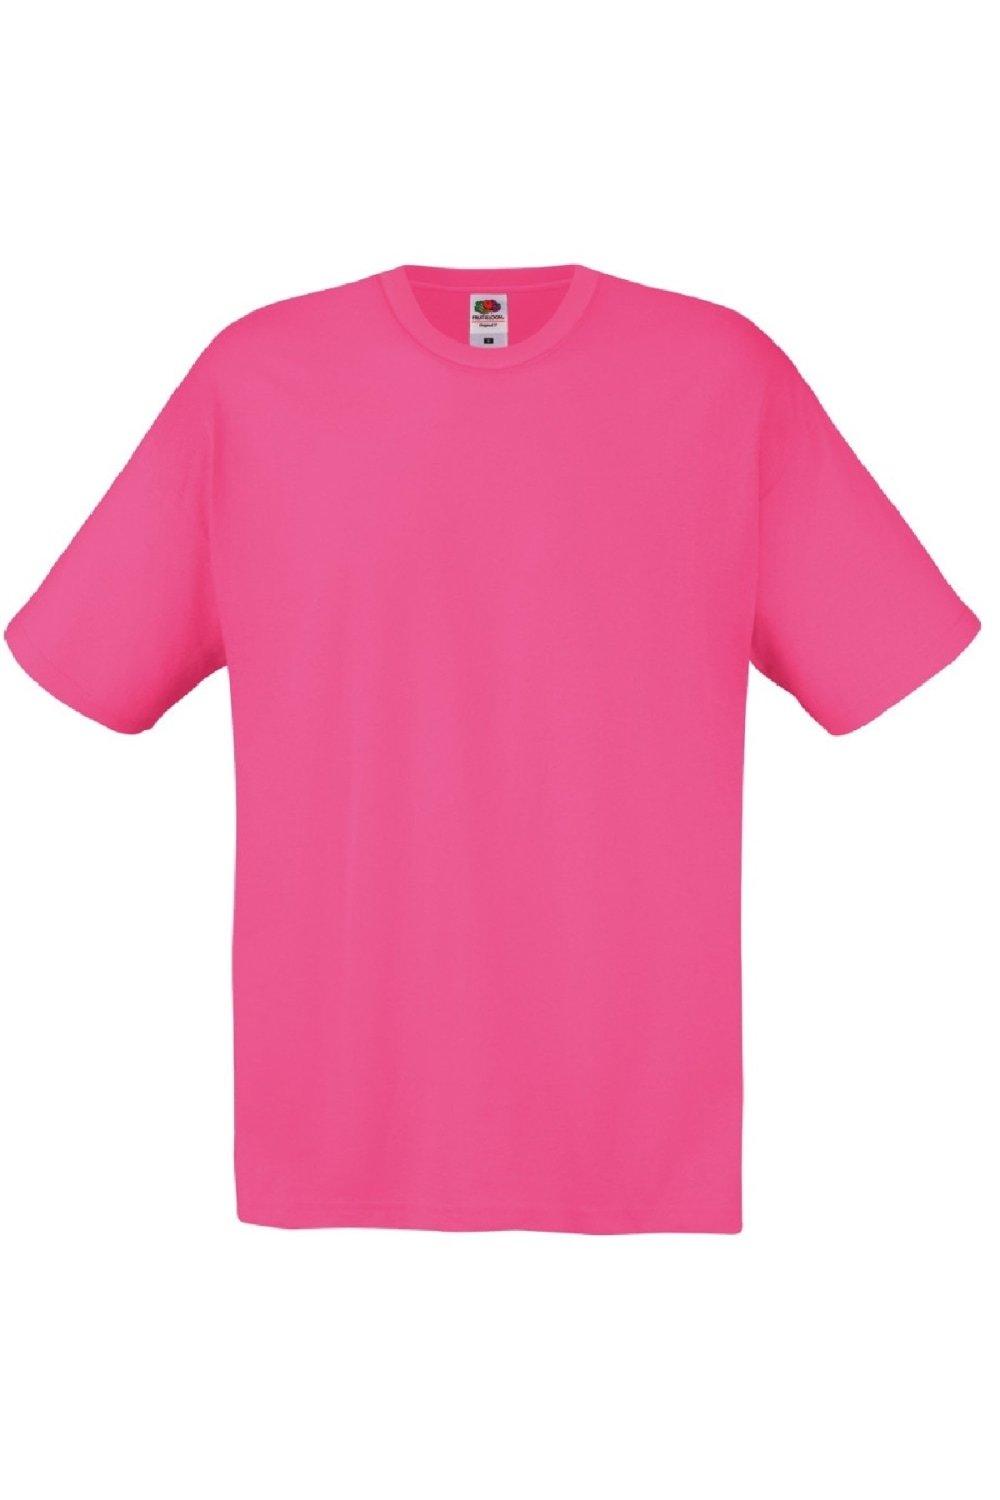 Оригинальная полноразмерная футболка Screen Stars с короткими рукавами Fruit of the Loom, розовый